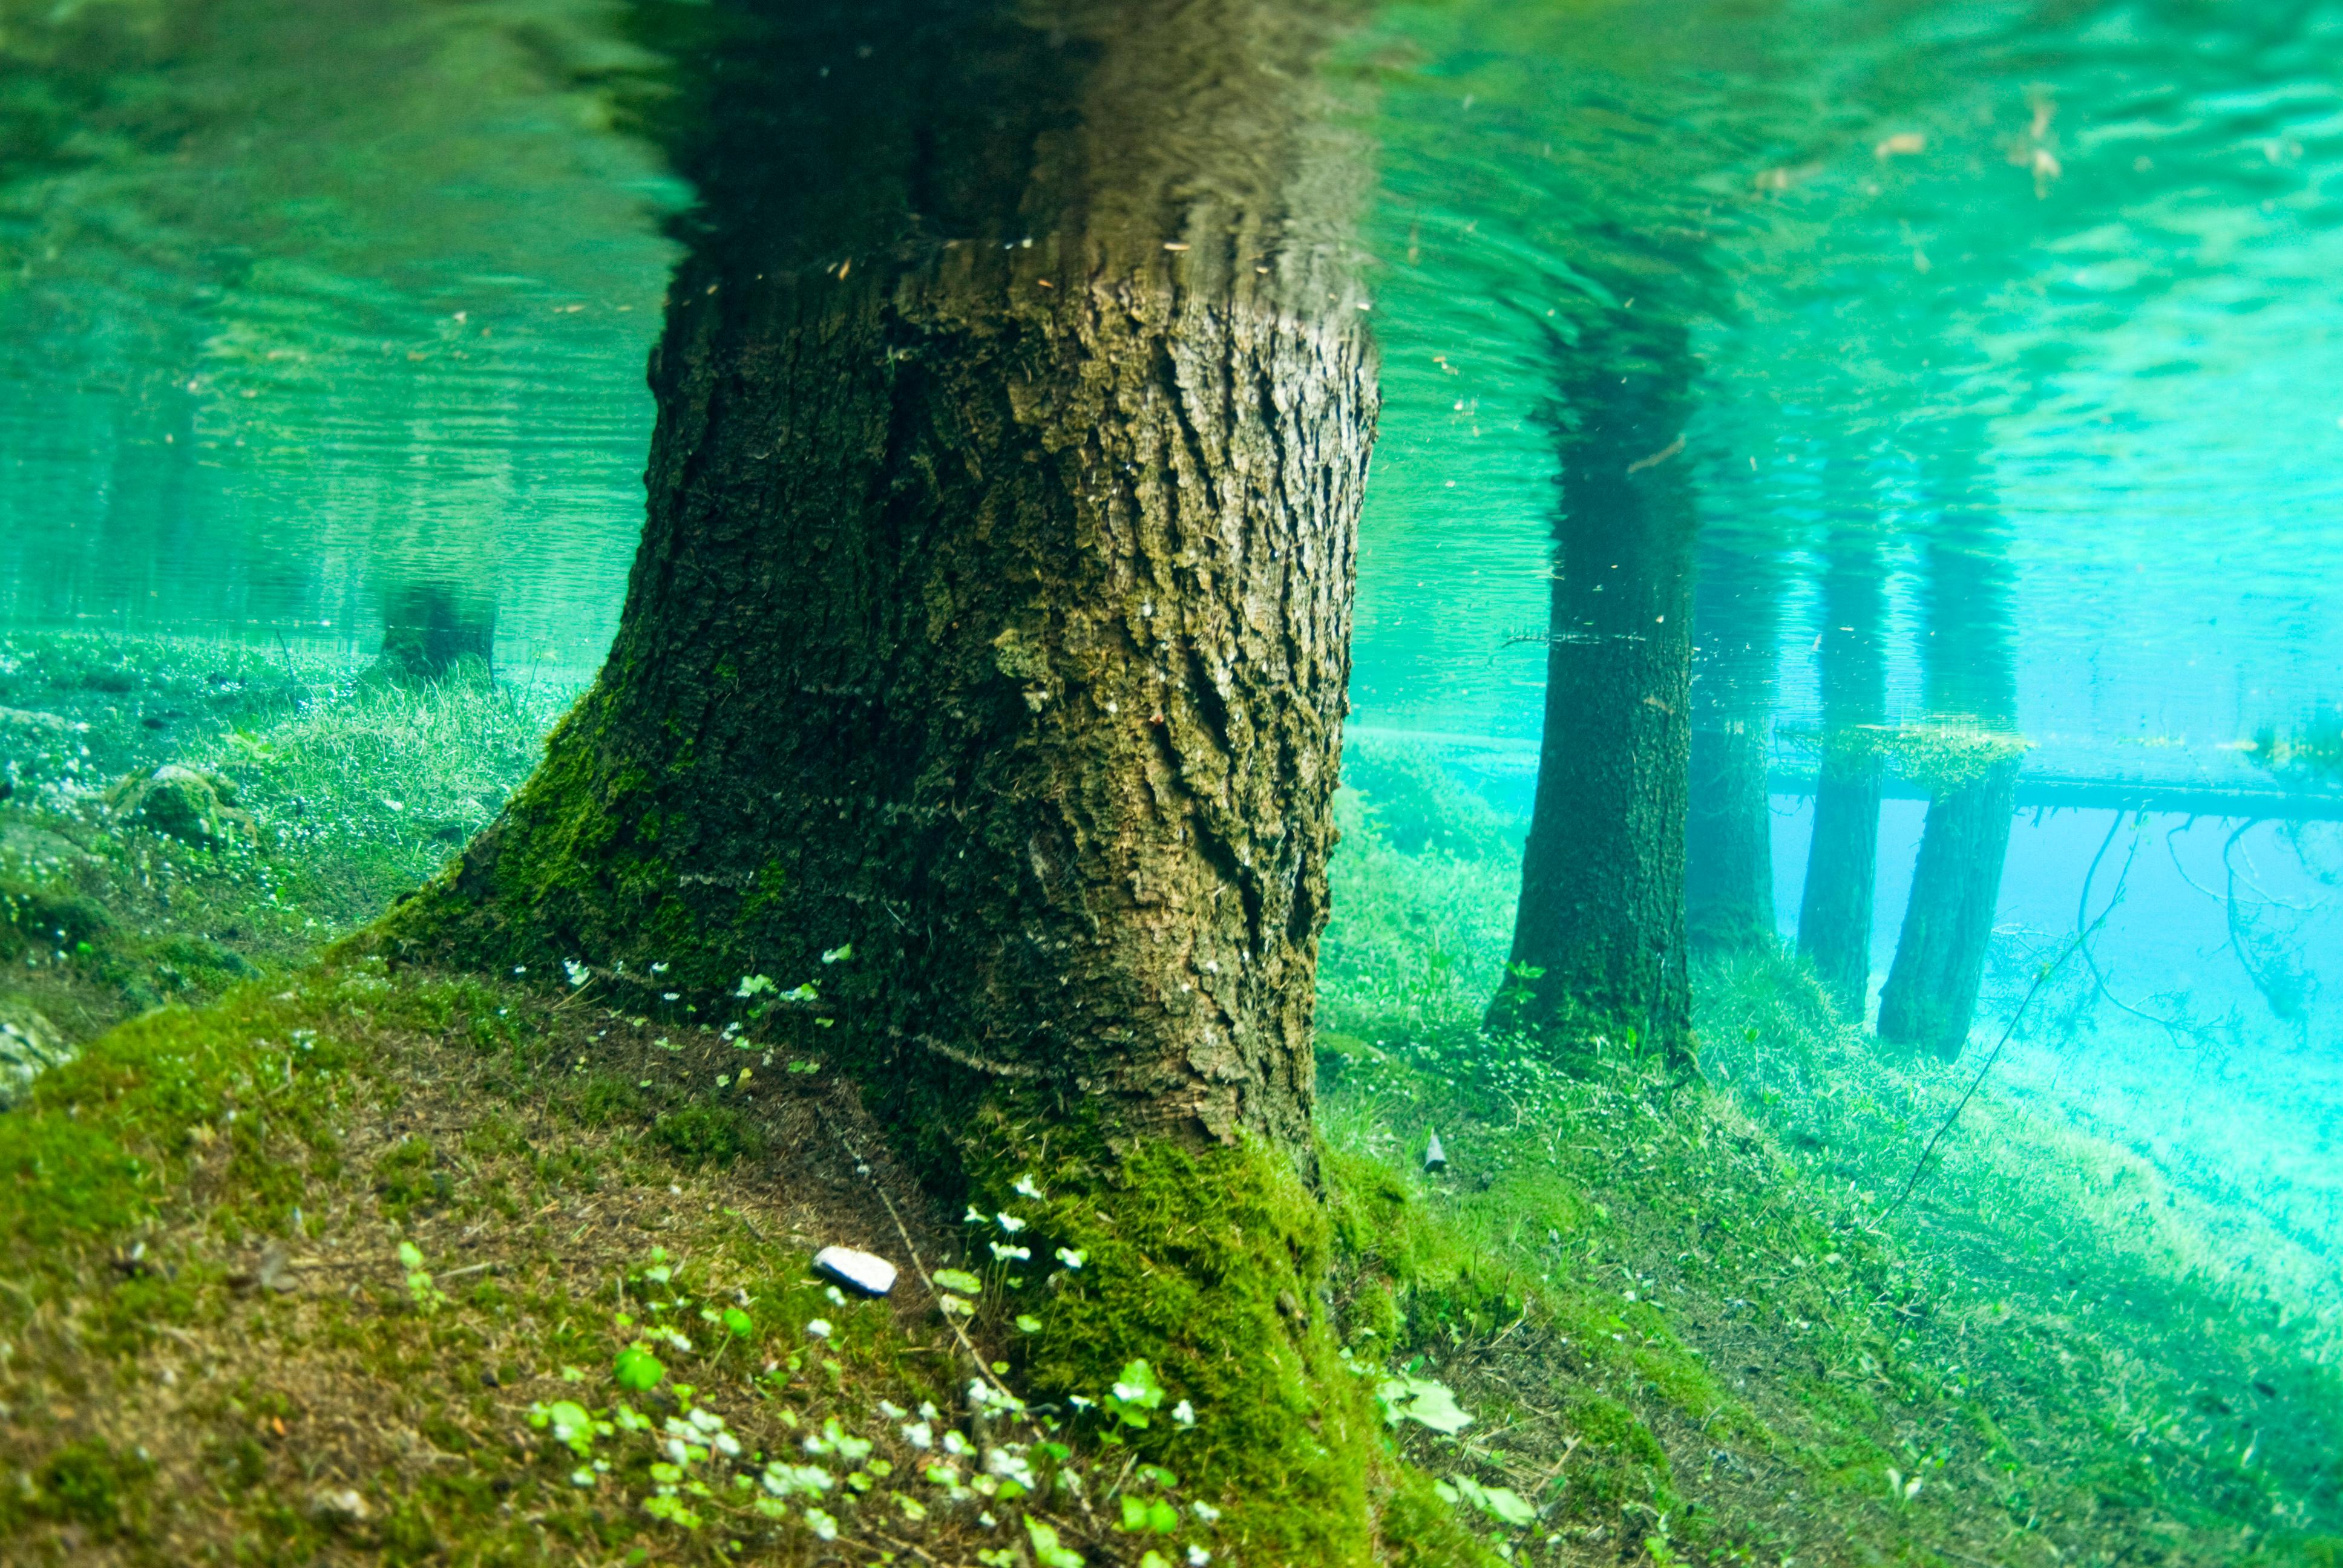 Зеленая вода в озере. Австрия зеленое озеро подводный парк. Озеро Грюнер. Грюнер-зе озеро в Австрии. Парк Австралия зеленое озеро.